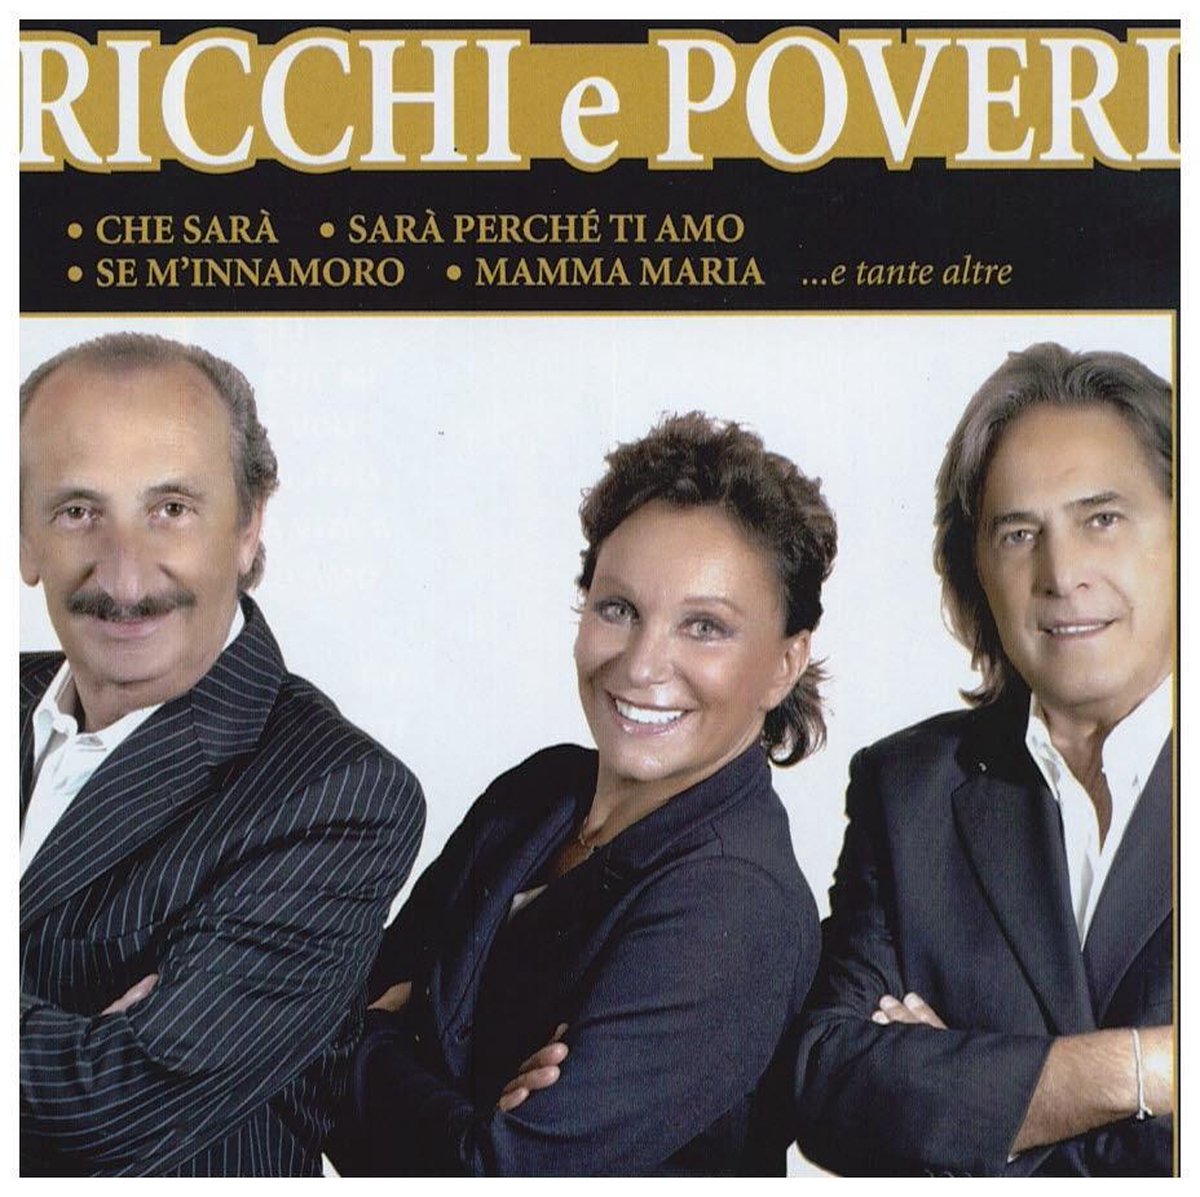 Группа Ricchi e Poveri альбомы. Ricchi e Poveri Постер. Обложка CD диска Ricchi e Poveri mamma Maria. Трио Рики э повери диск.